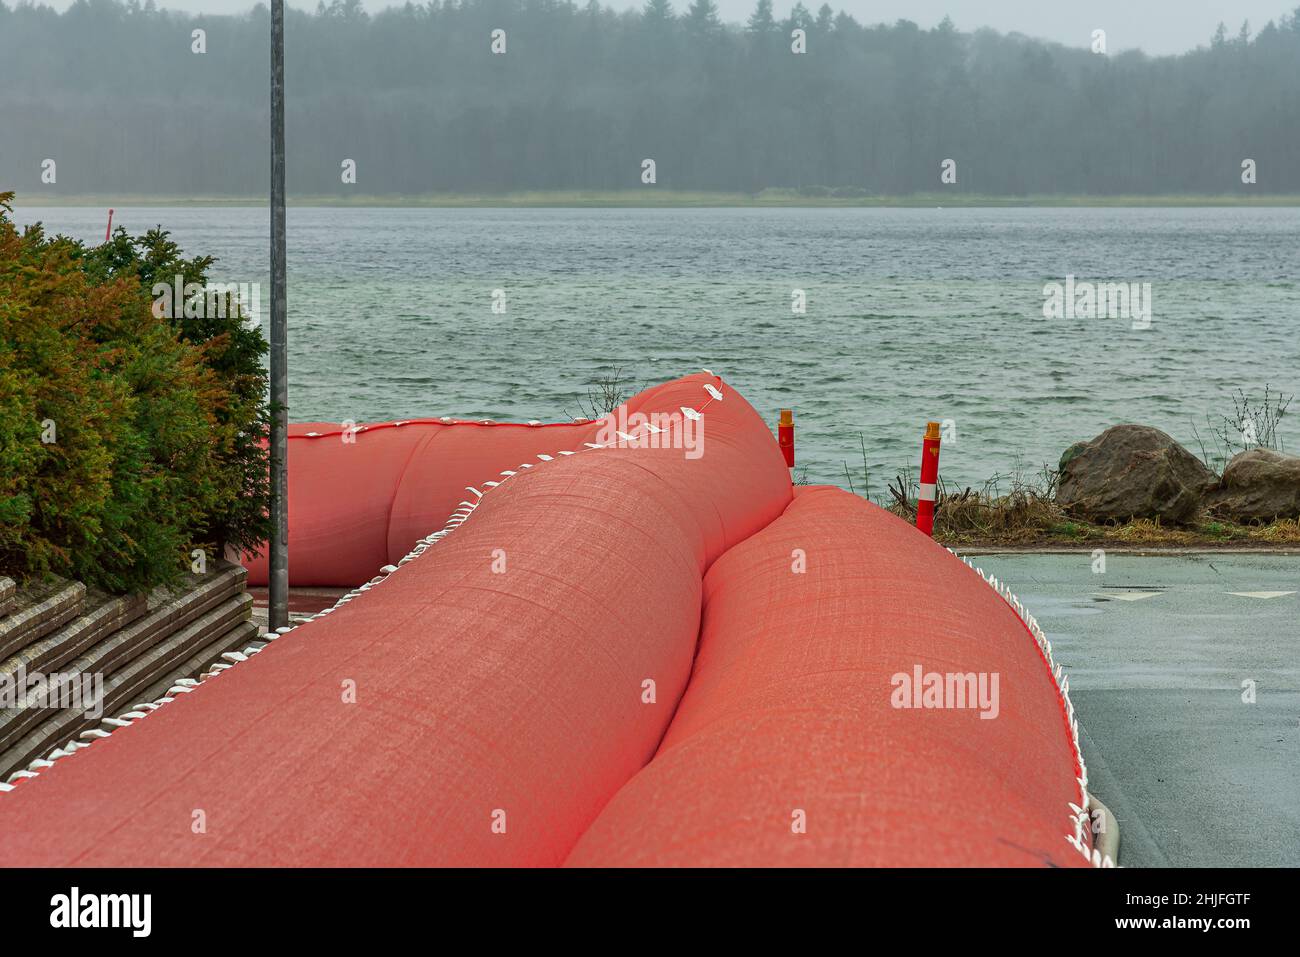 Grand tube d'eau rose pour empêcher la tempête Malik à frederikssund d'inonder la ville Fredrikssund, Danemark, 29 janvier 2022 Banque D'Images